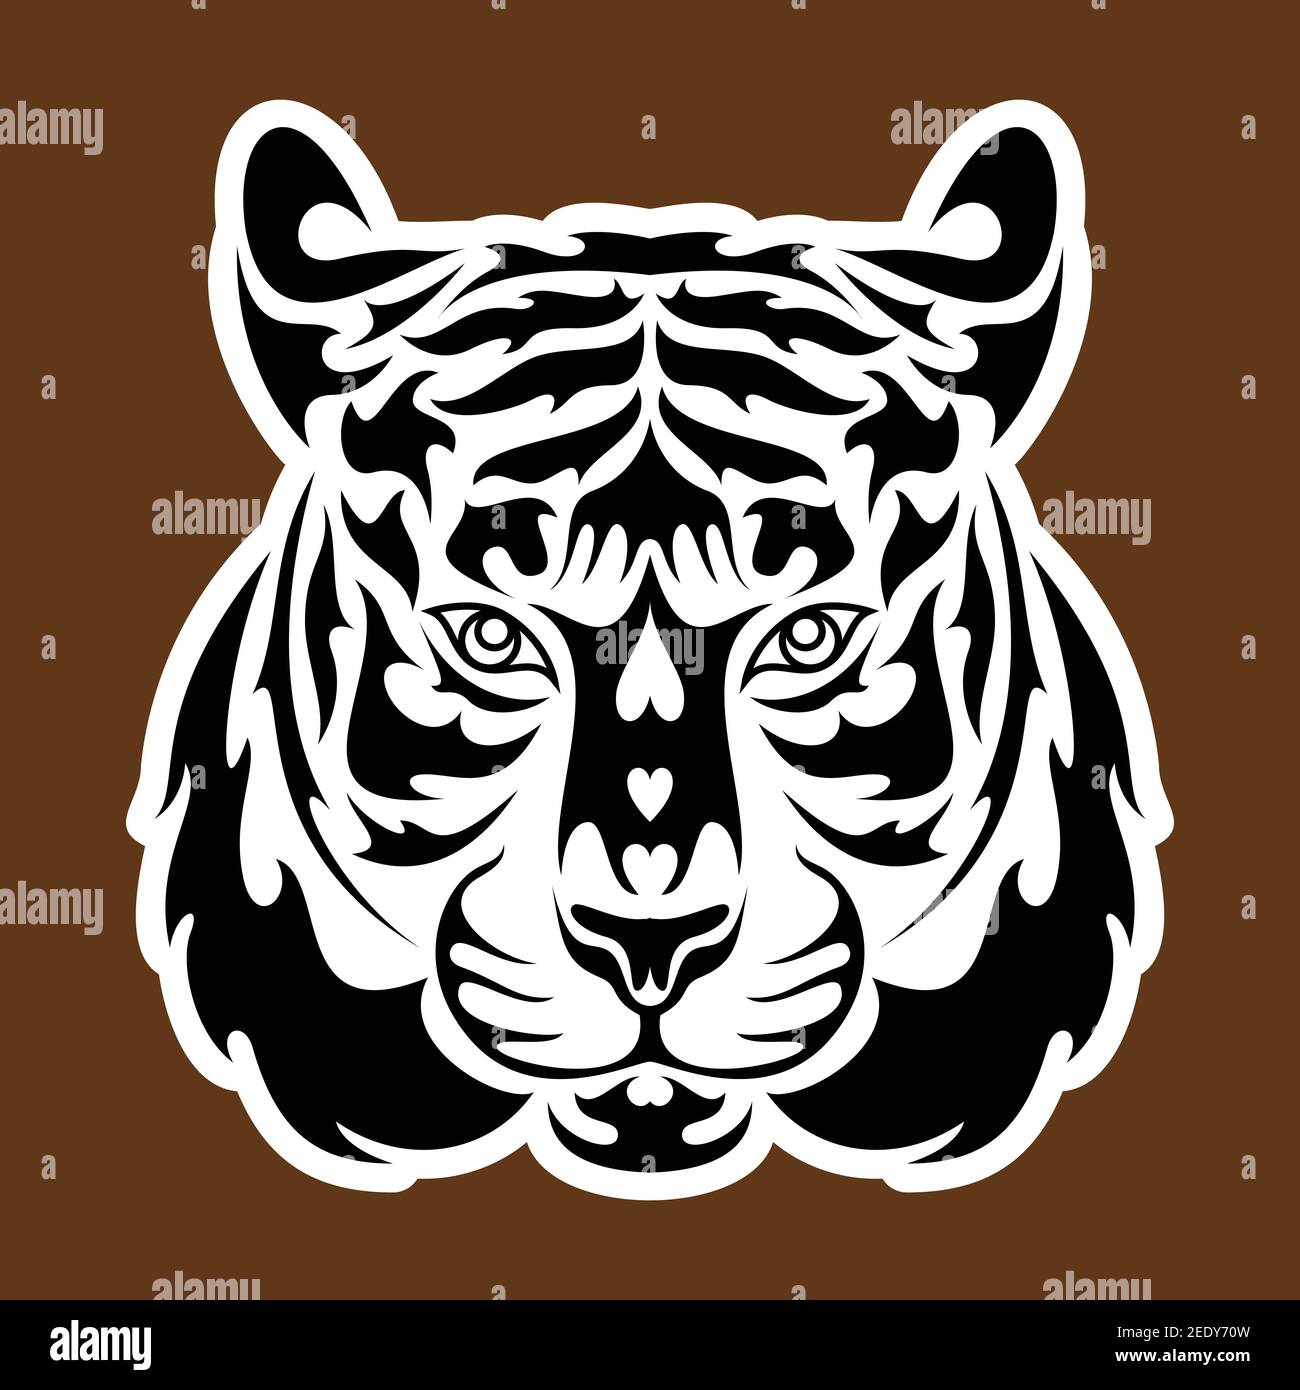 Portrait abstrait dessiné à la main d'un tigre. Autocollant. Illustration vectorielle stylisée isolée sur fond marron. Illustration de Vecteur